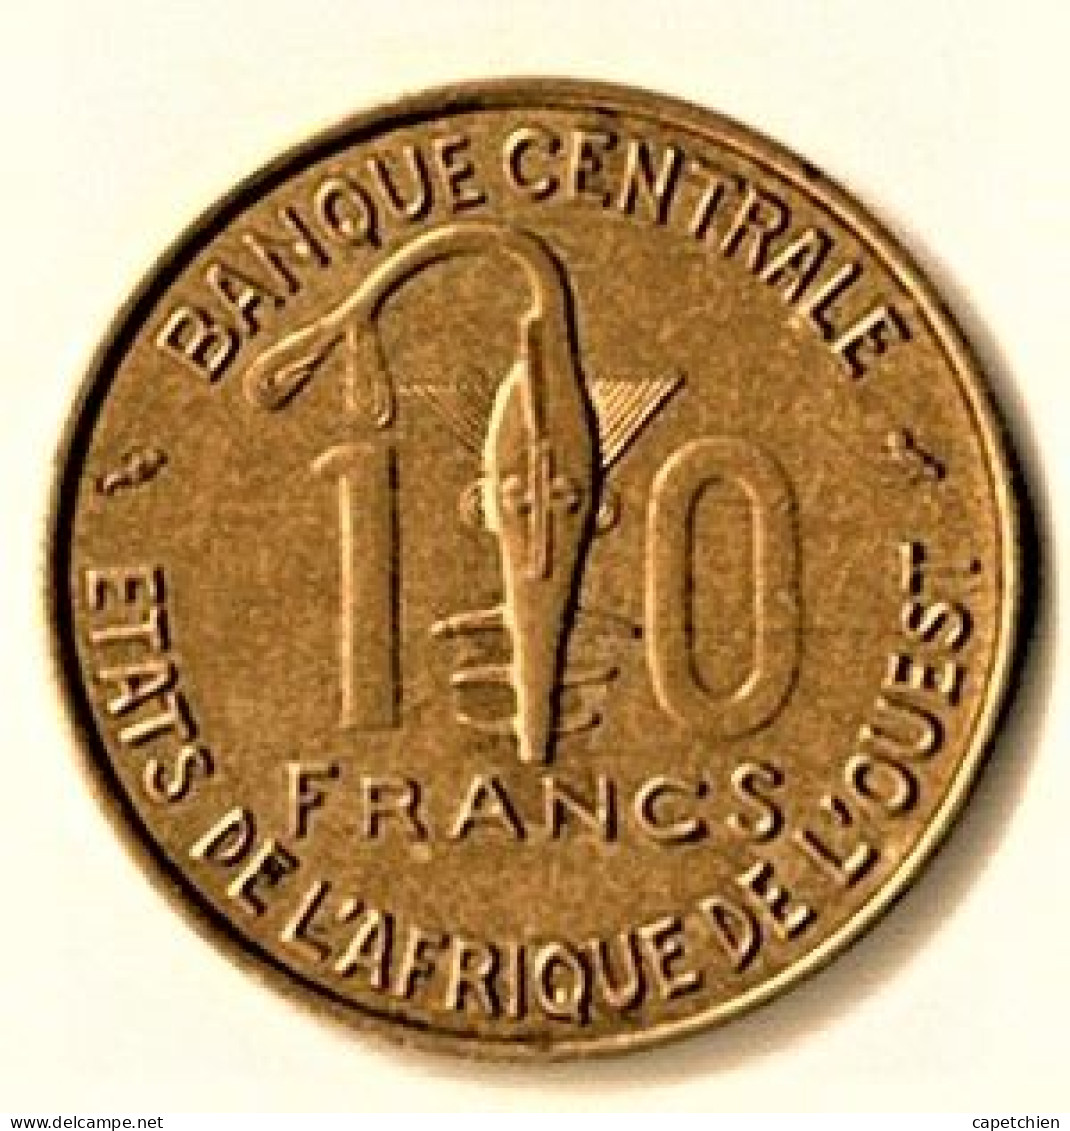 ETAT DE L'AFRIQUE DE L'OUEST / 10 FRANCS / 1969 - French West Africa